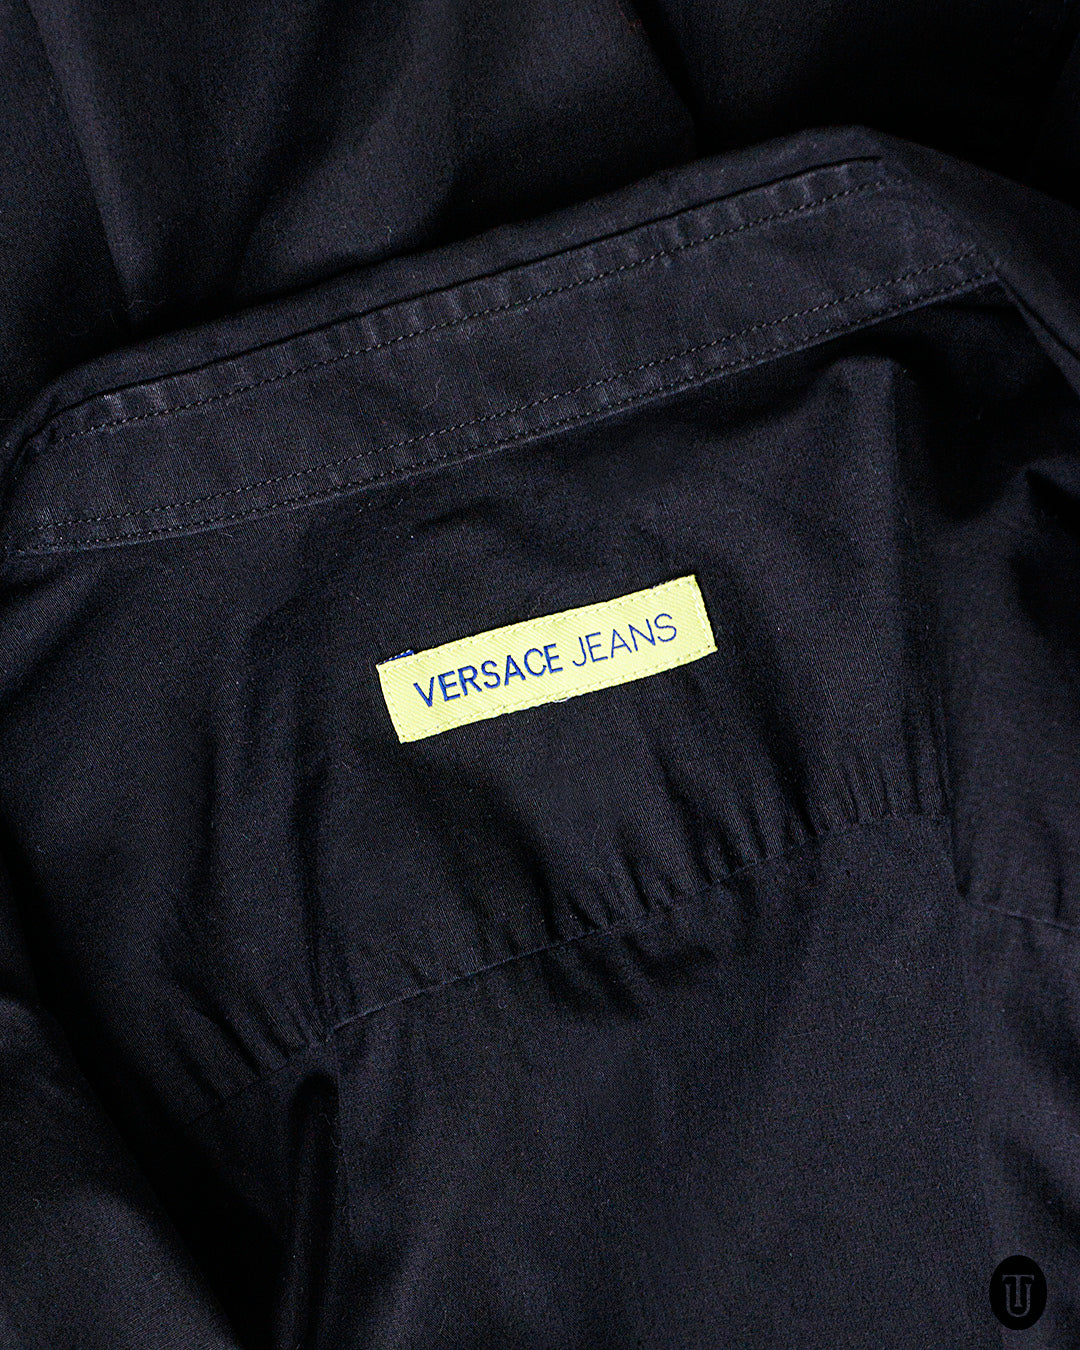 2000s Versace Jeans Black Cotton Shirt S